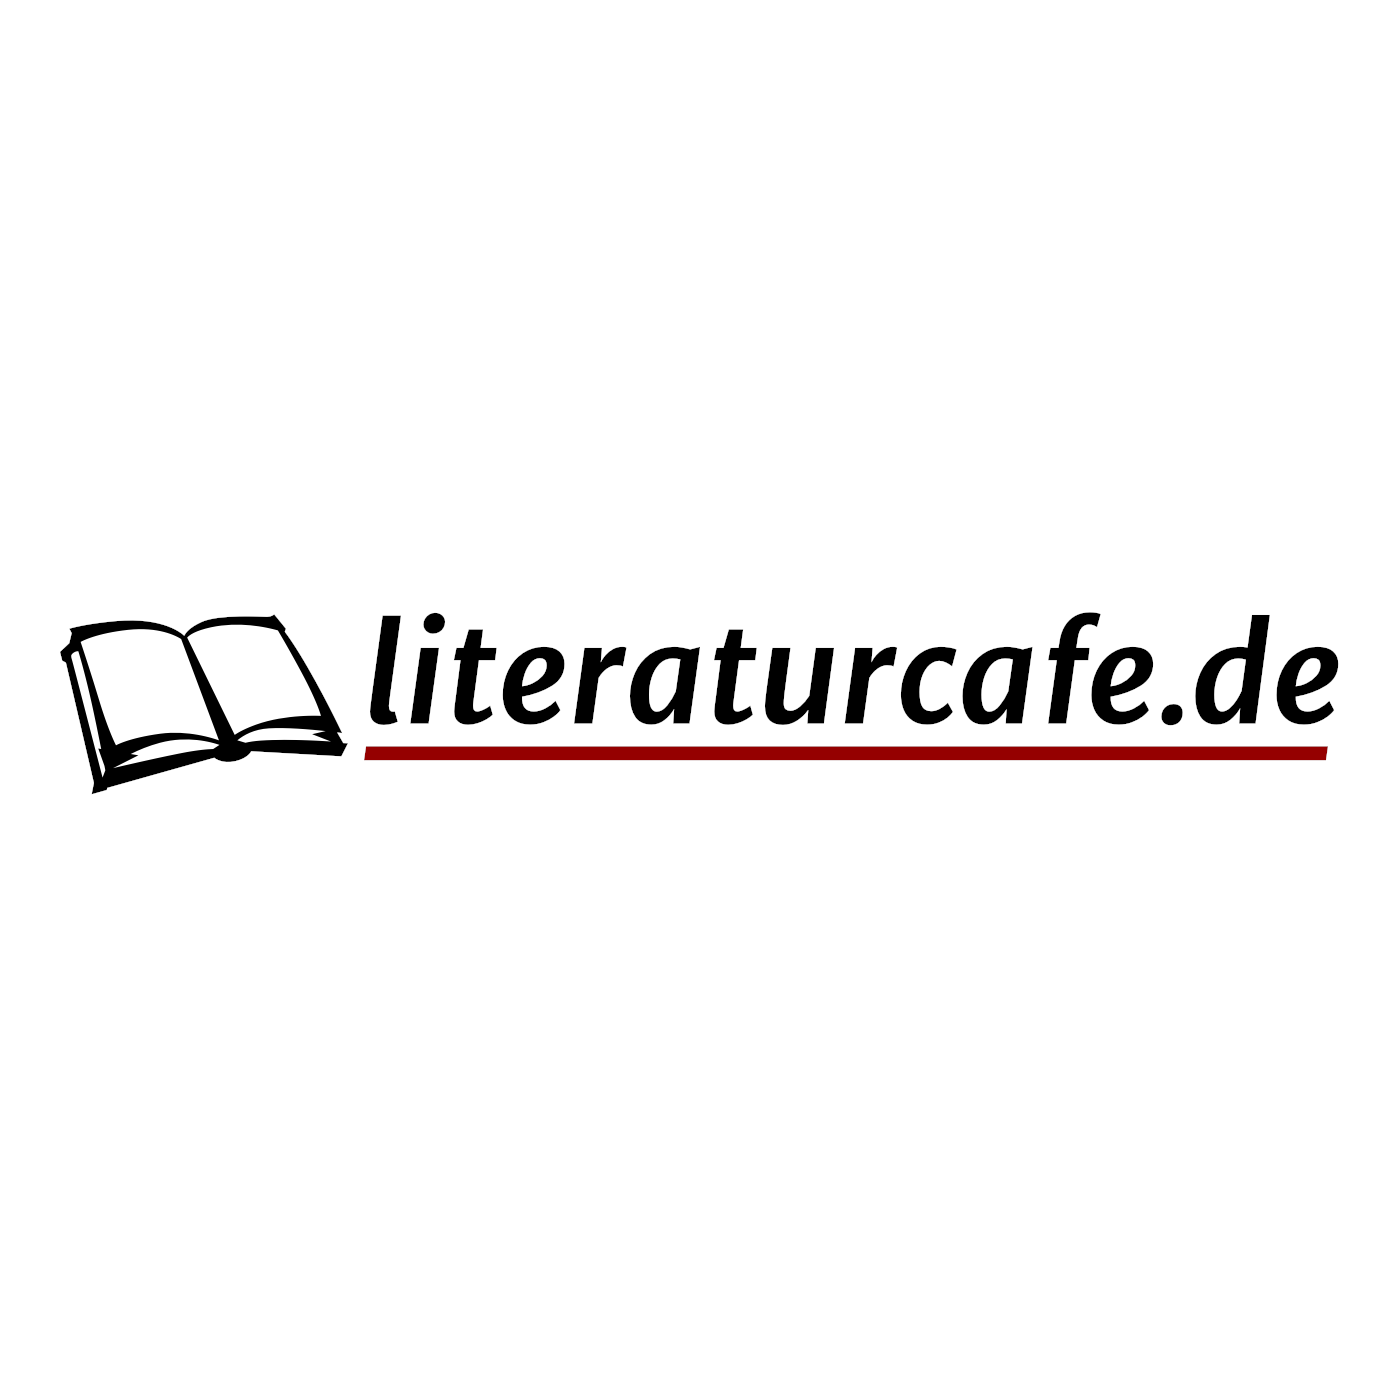 literaturcafe.de - der literarische Treffpunkt im Internet